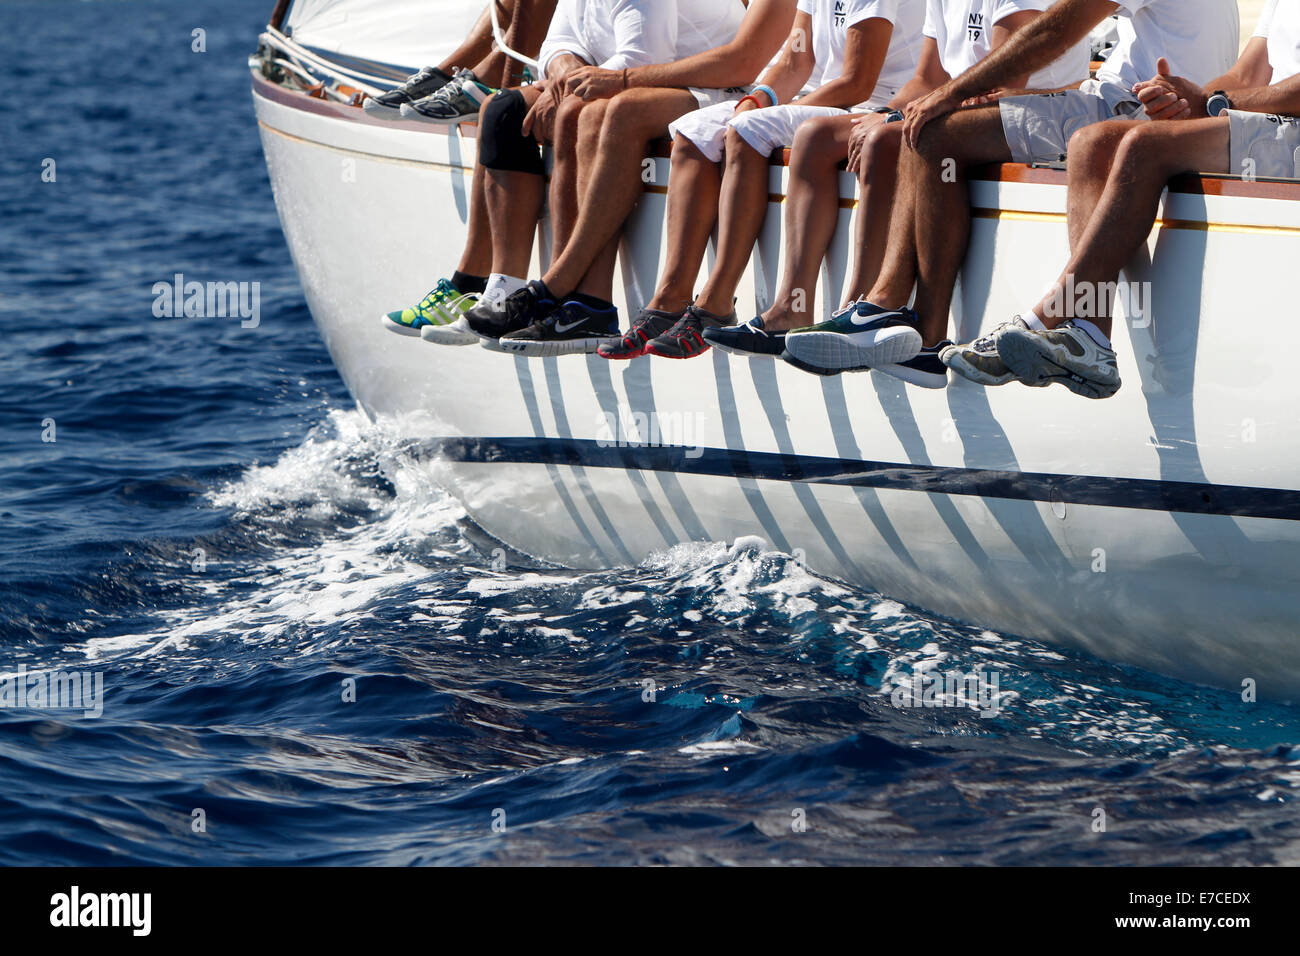 Imperia, Italien. 13. September 2014. Mannschafts Beine Seite während einer Regatta. Vele d ' Epoca ist eine klassische Yachten Regatta findet alle zwei Jahre in Imperia, Italien. Stockfoto